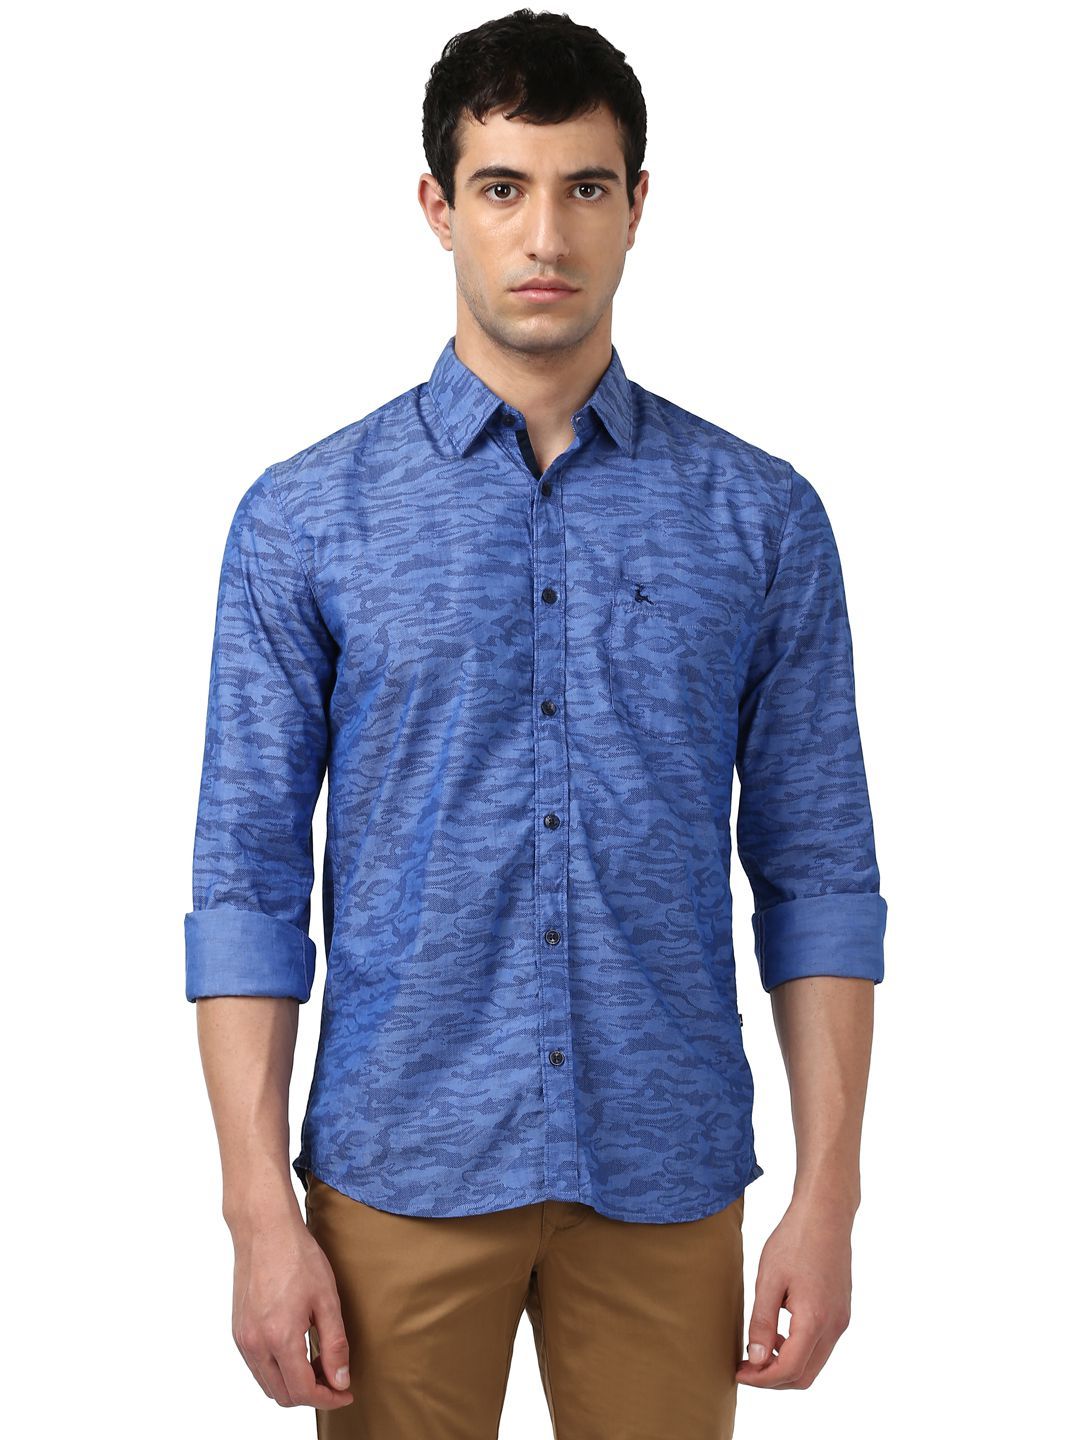 Parx Blue Slim Fit Shirt - Buy Parx Blue Slim Fit Shirt Online at Best ...